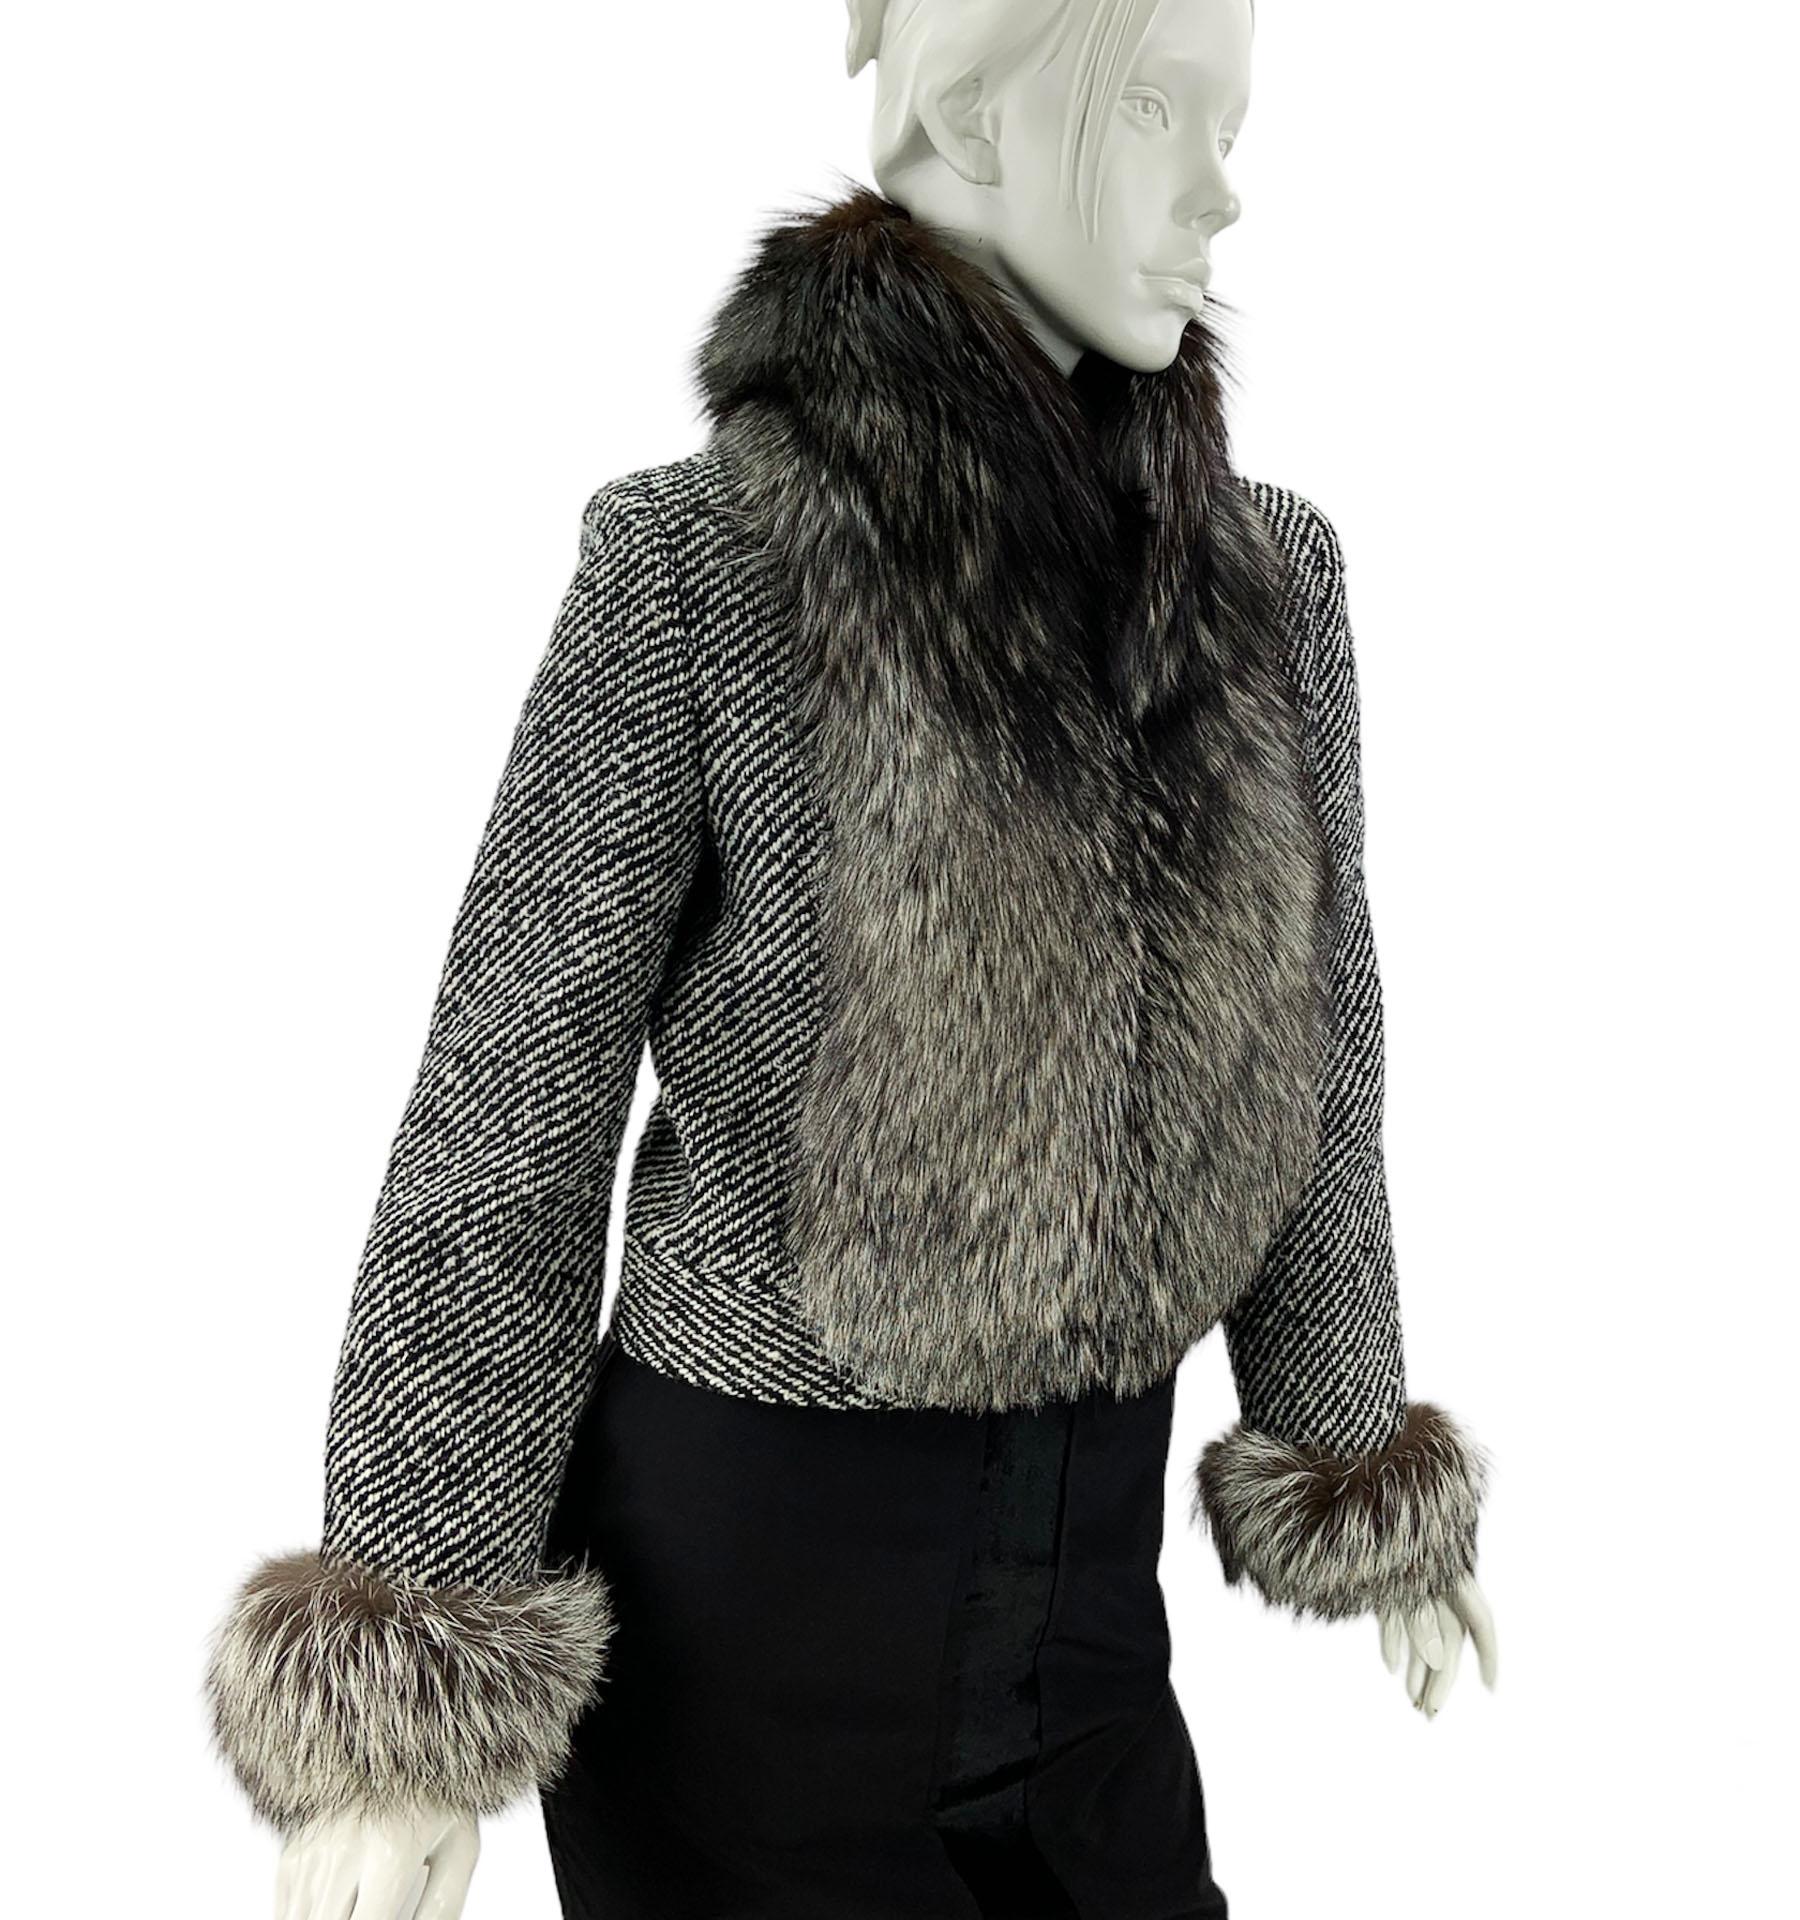 Vintage Valentino Tweed Wolle Pelz Trim Fitted Jacke
US-Größe - 6
Schwarze und weiße Farben, Fuchspelzkragen und Ärmelabschlüsse, vollständig gefüttert, Haken- und Ösenverschluss.
Maße: Länge - 19 Zoll, Büste - 36